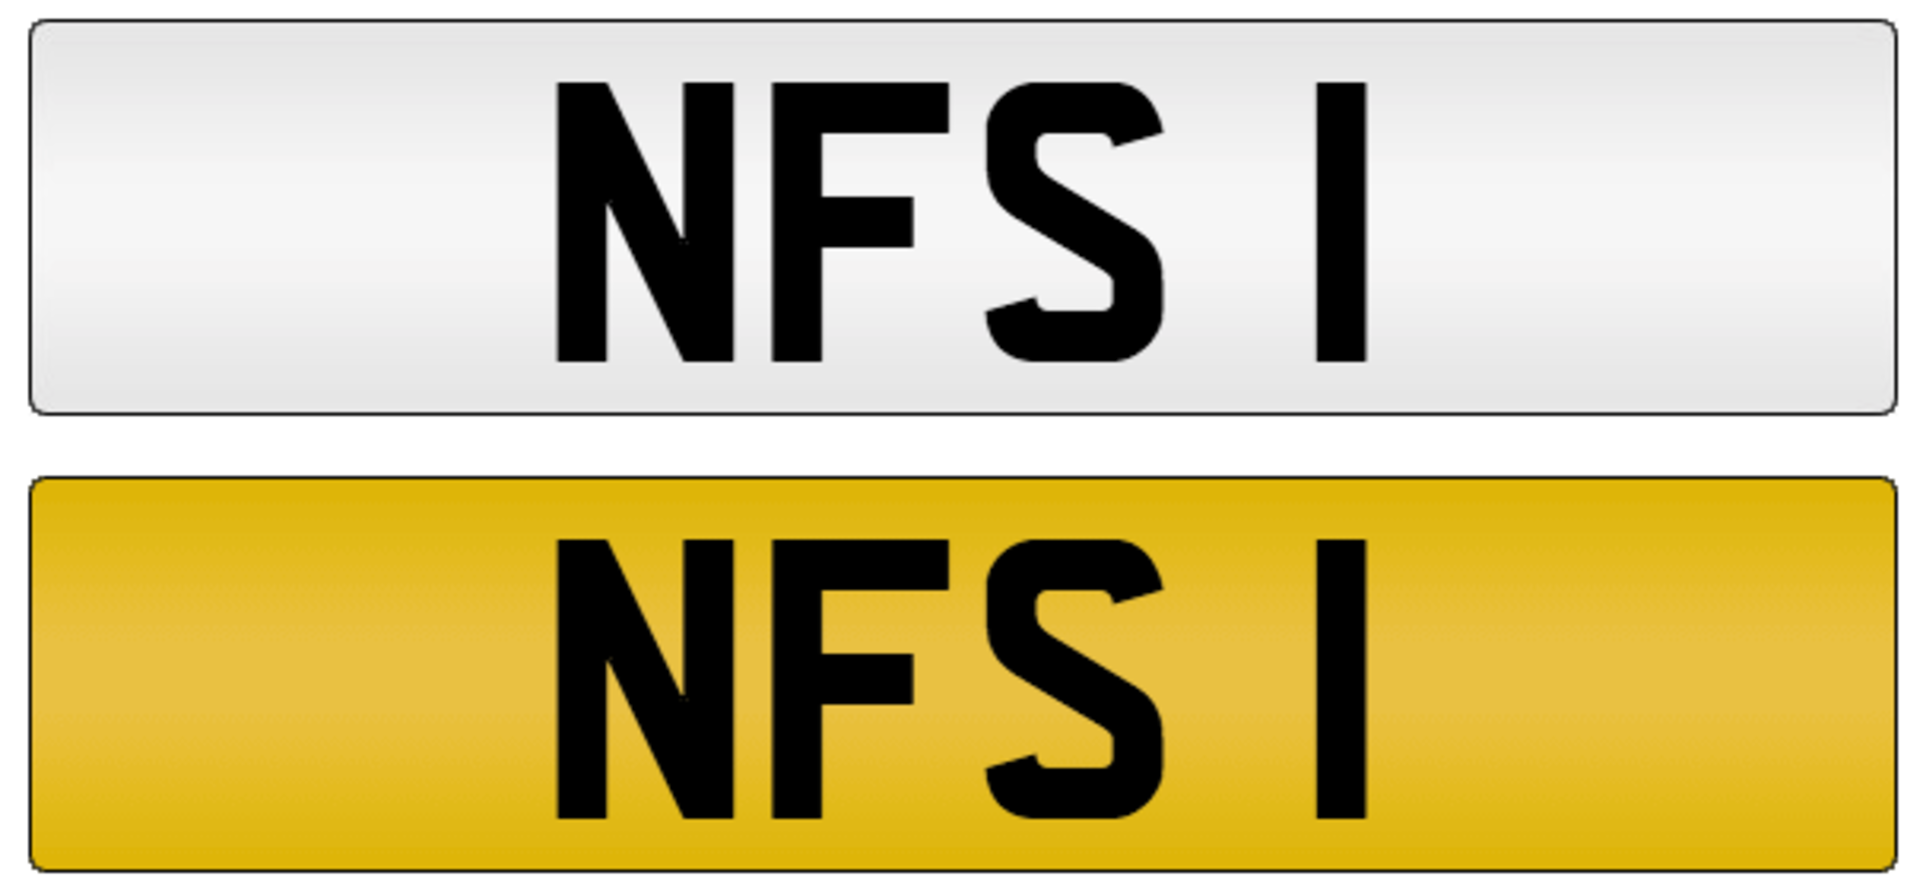 Registration - NFS 1